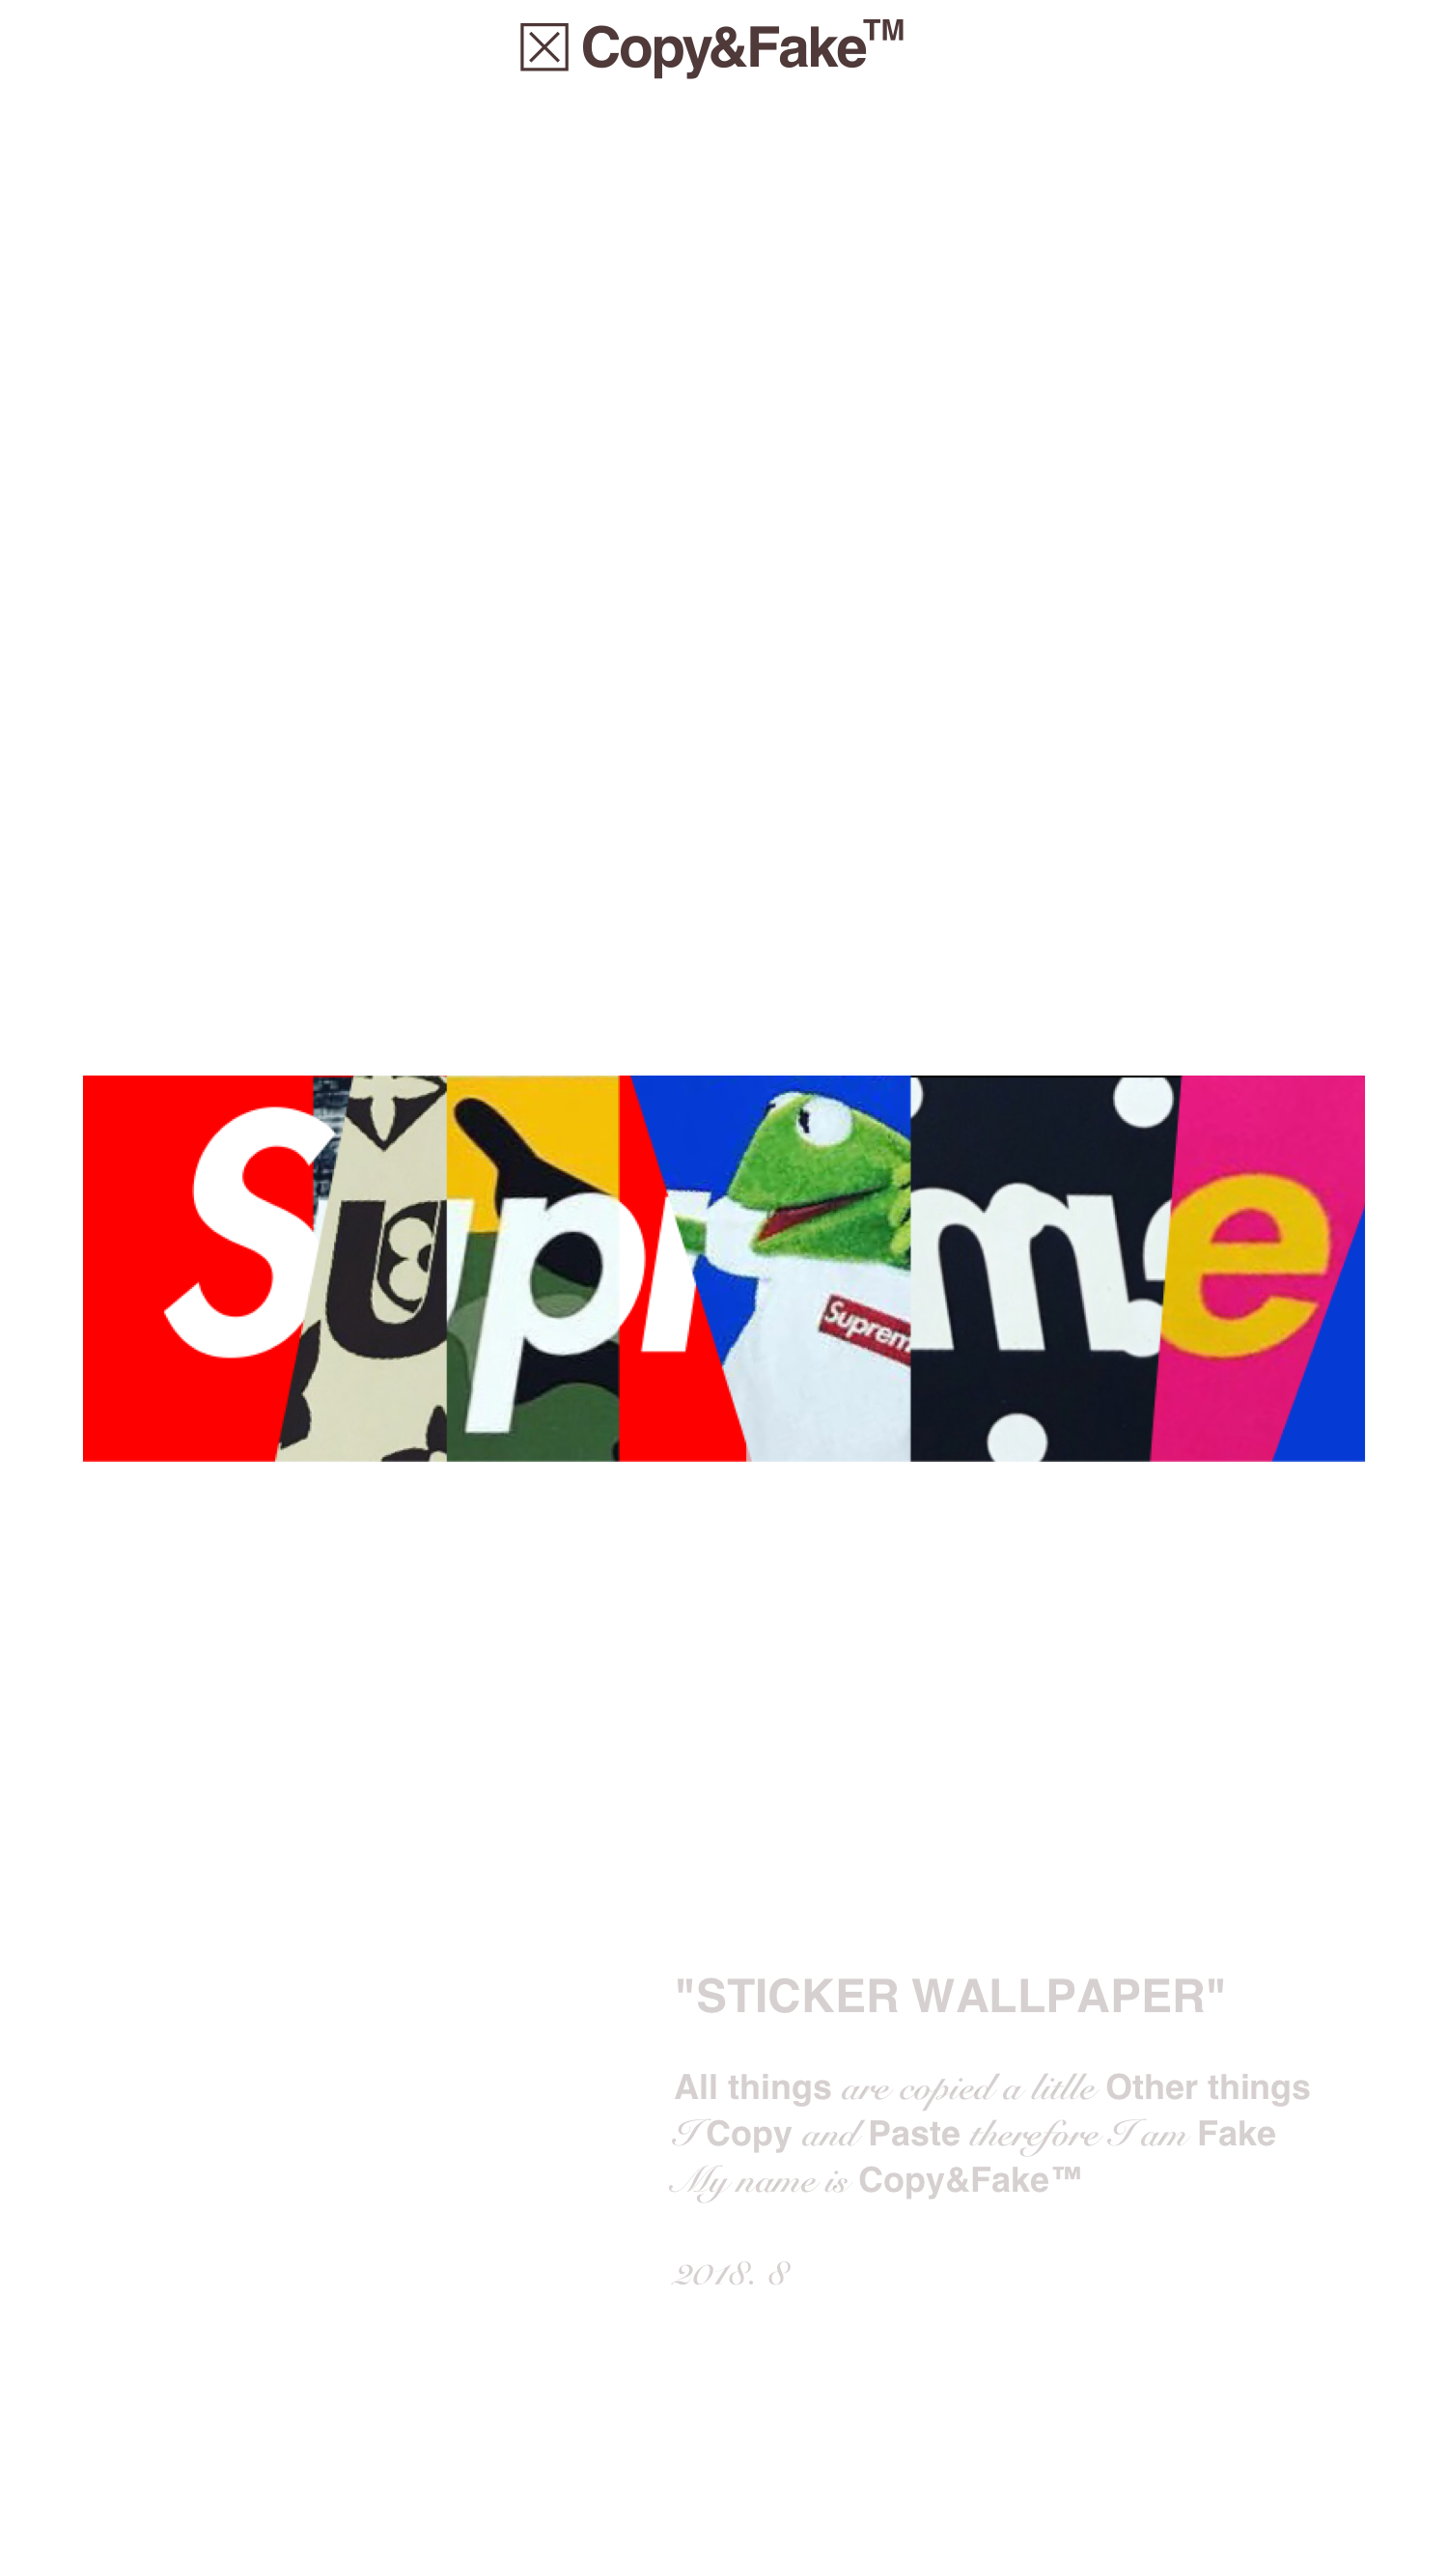 Supreme lv box logo HD wallpapers